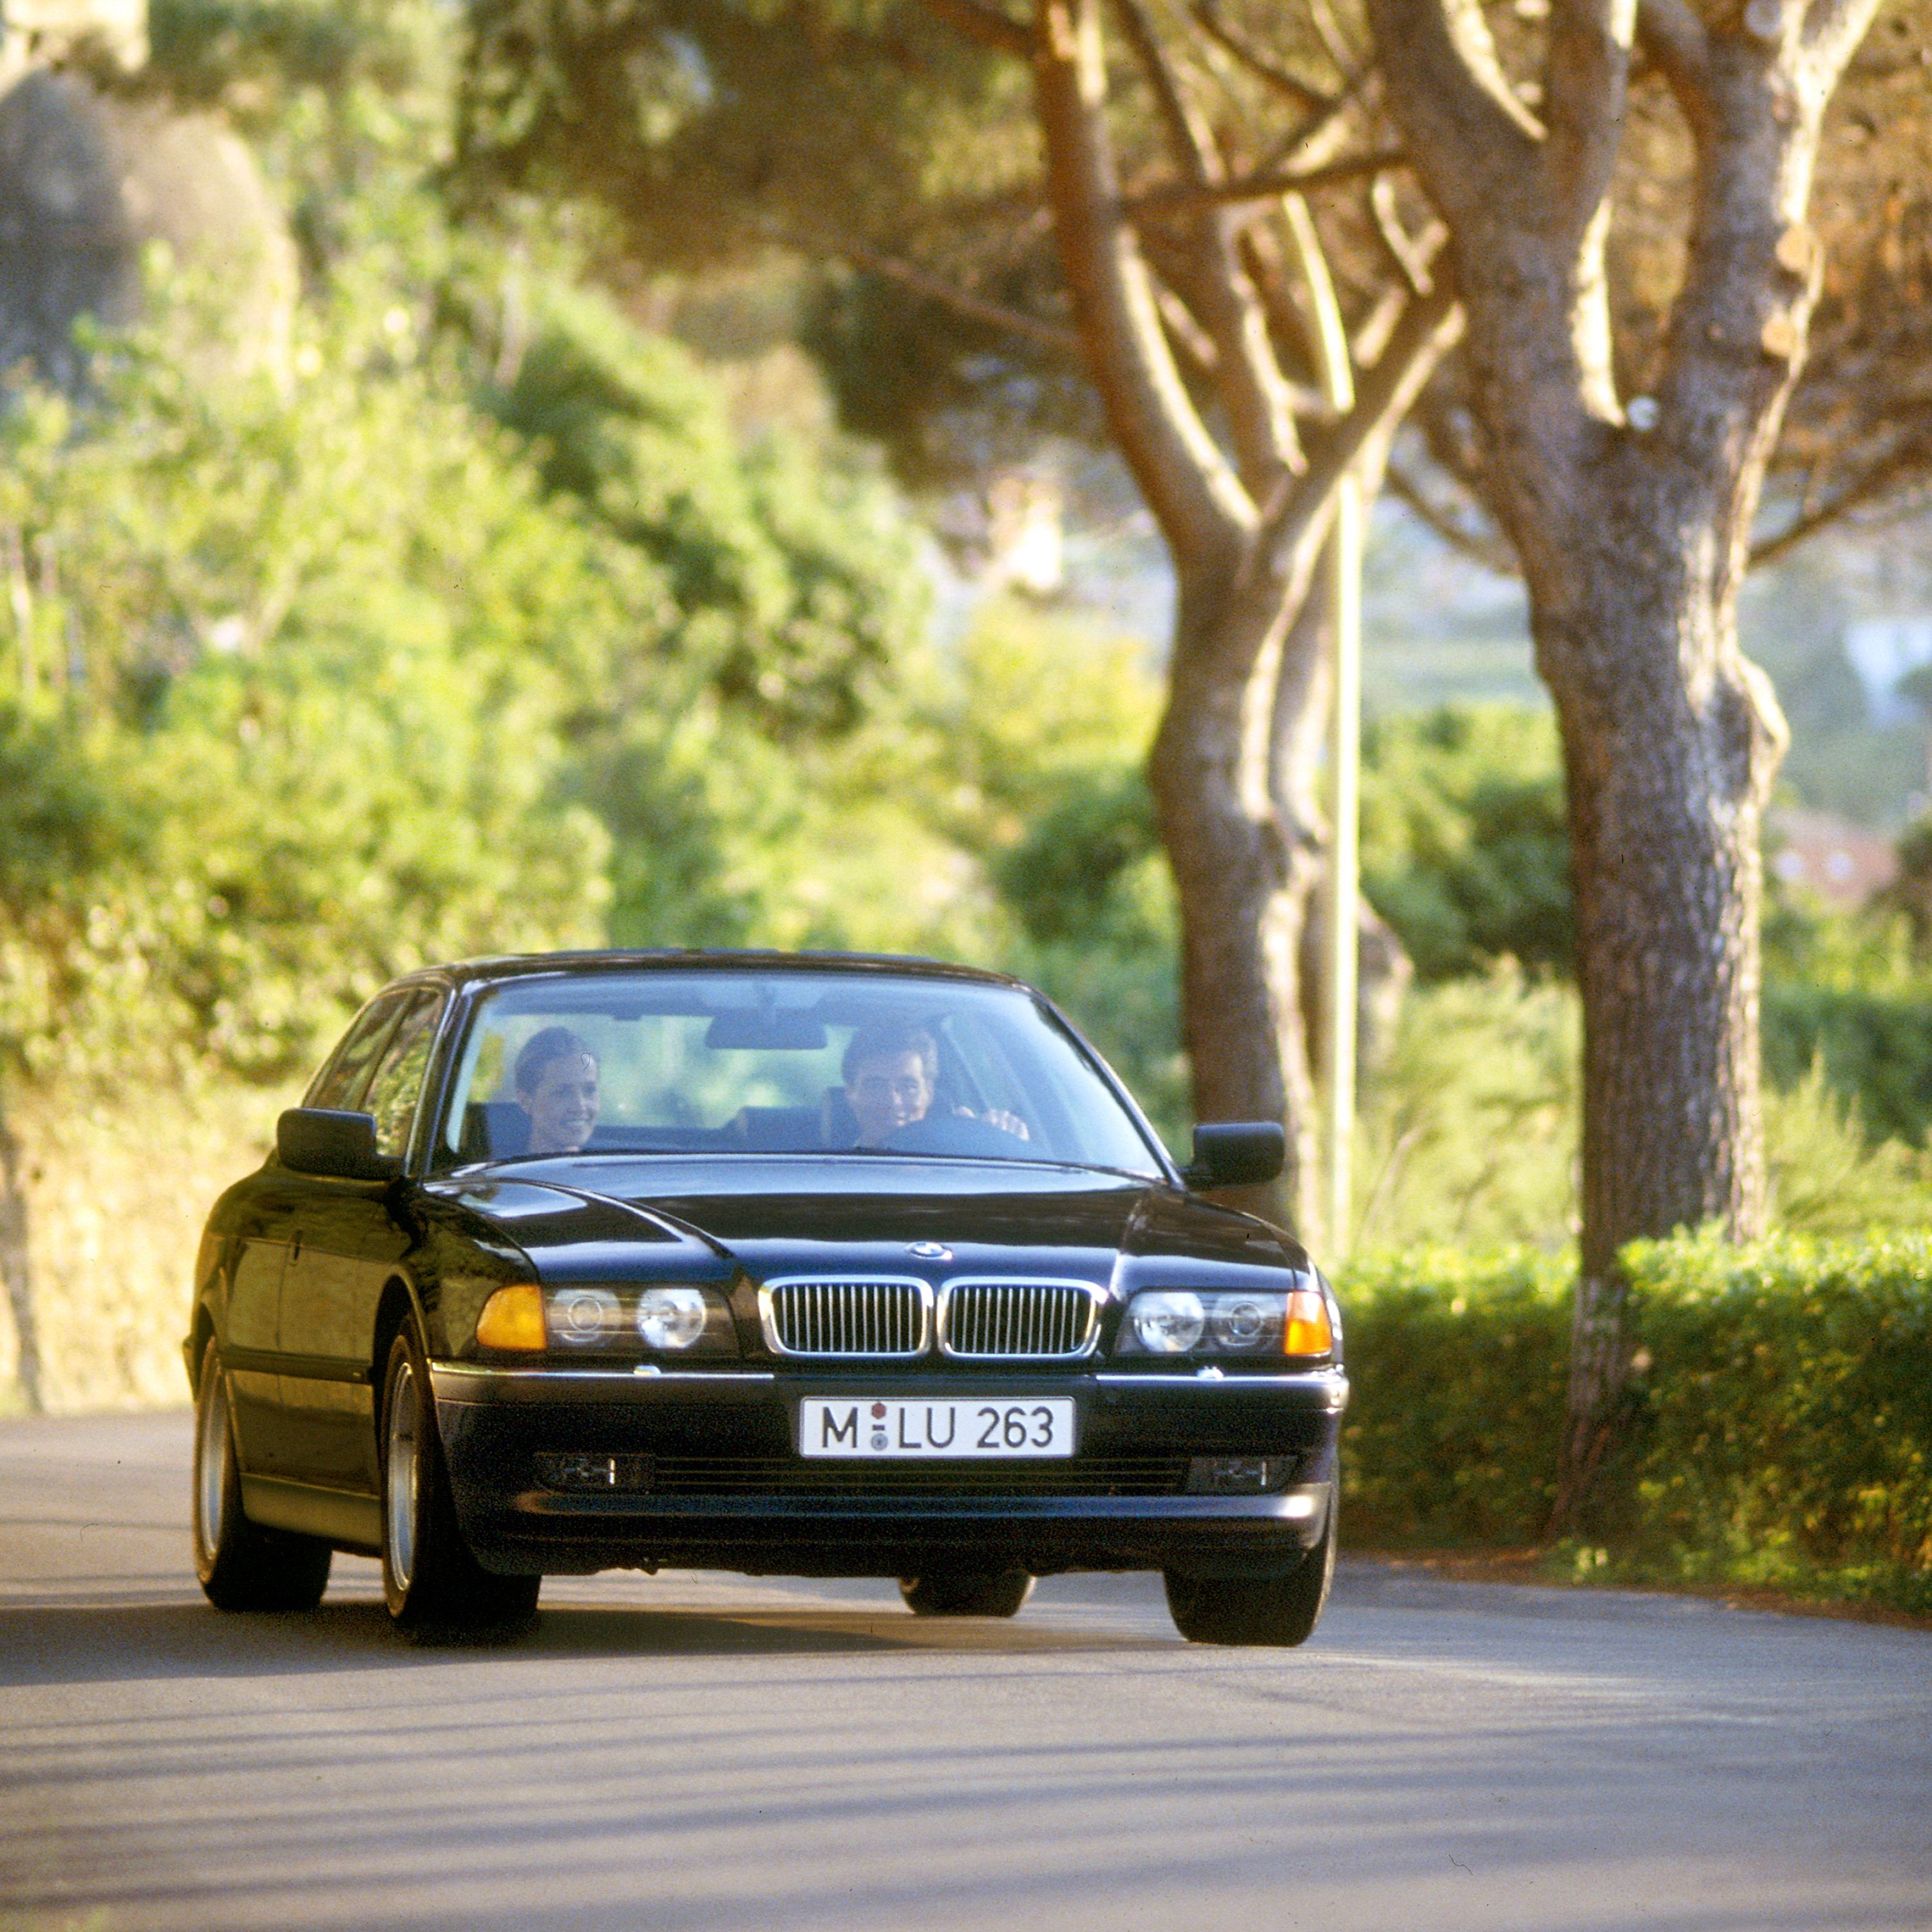 لقطة للسيارة BMW 7 Series Sedan E38 في شارع في الريف أثناء فصل الصيف، مع بلدة صغيرة في الخلفية